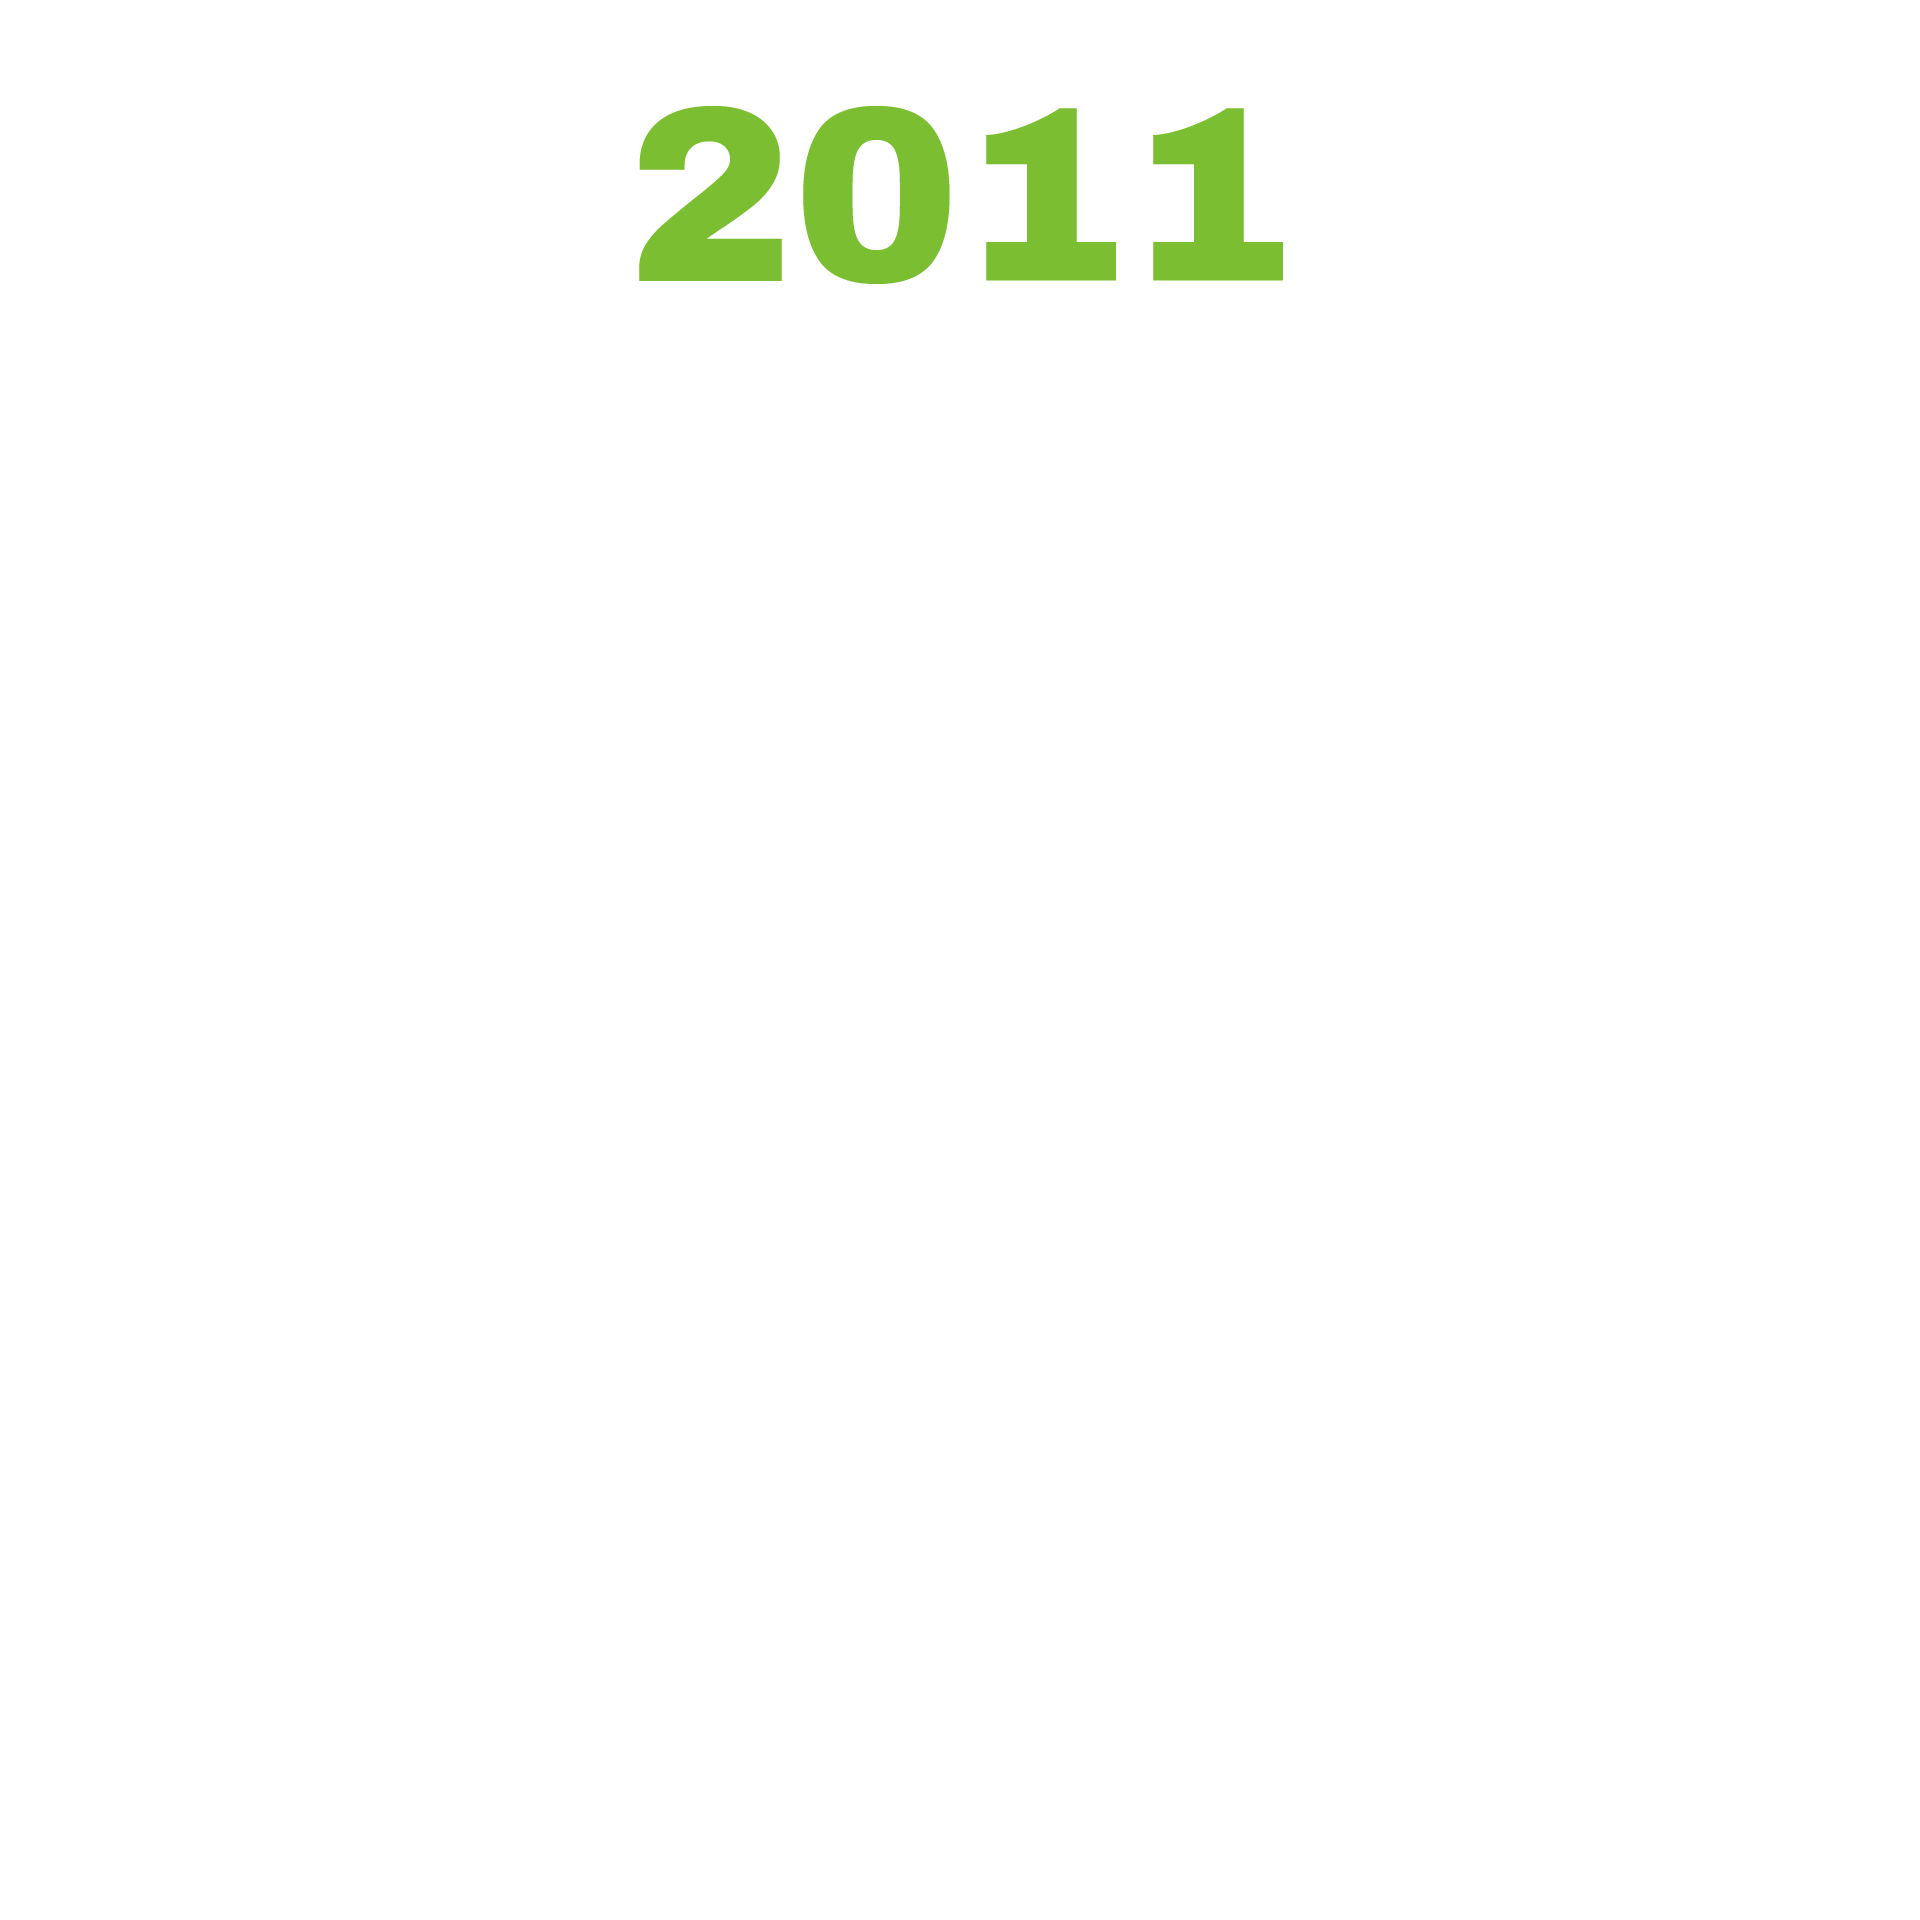 Timeline for Website_2011.png